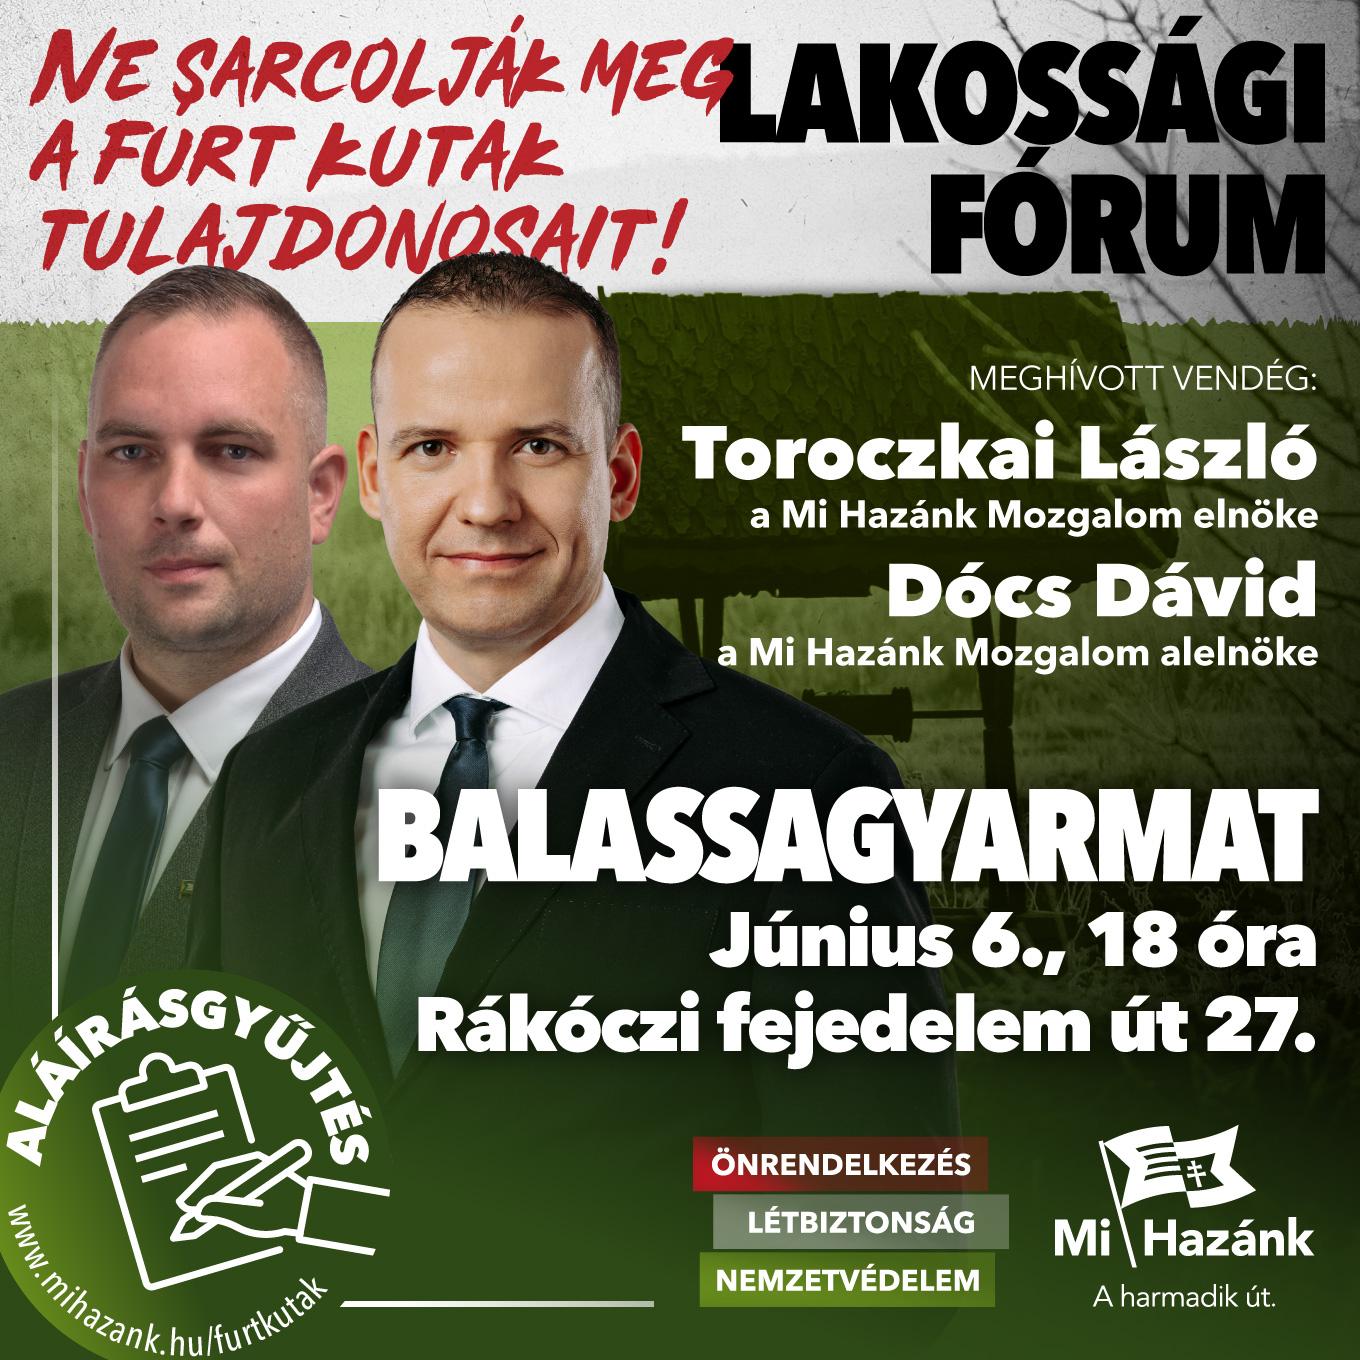 Lakossági fórum és aláírásgyűjtés Balassagyarmaton!